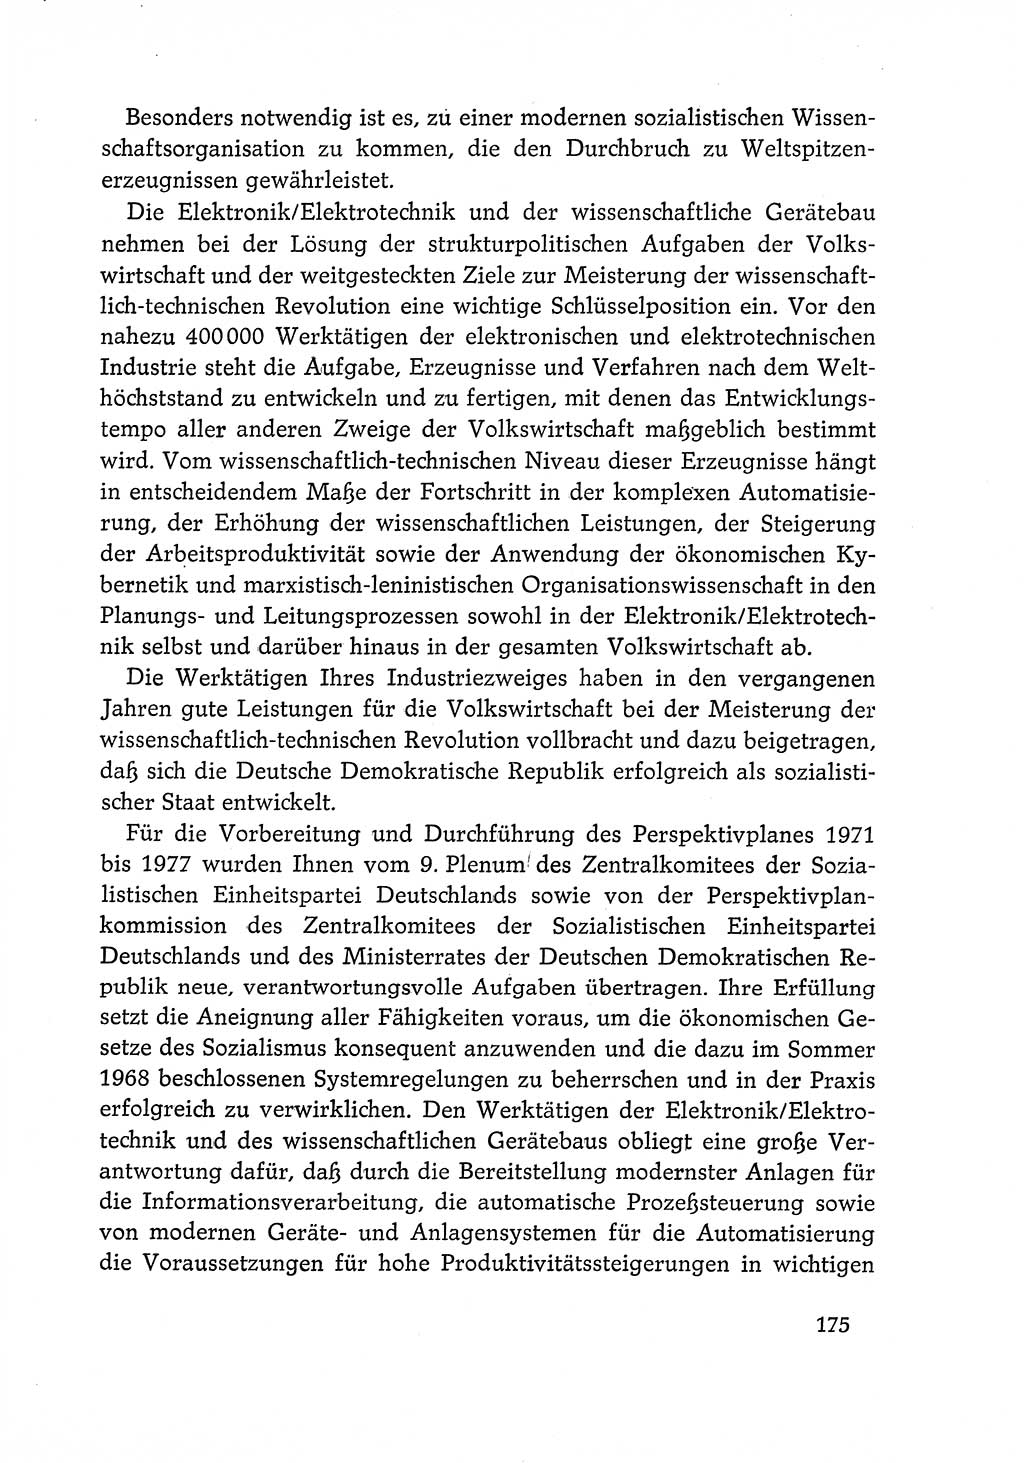 Dokumente der Sozialistischen Einheitspartei Deutschlands (SED) [Deutsche Demokratische Republik (DDR)] 1968-1969, Seite 175 (Dok. SED DDR 1968-1969, S. 175)